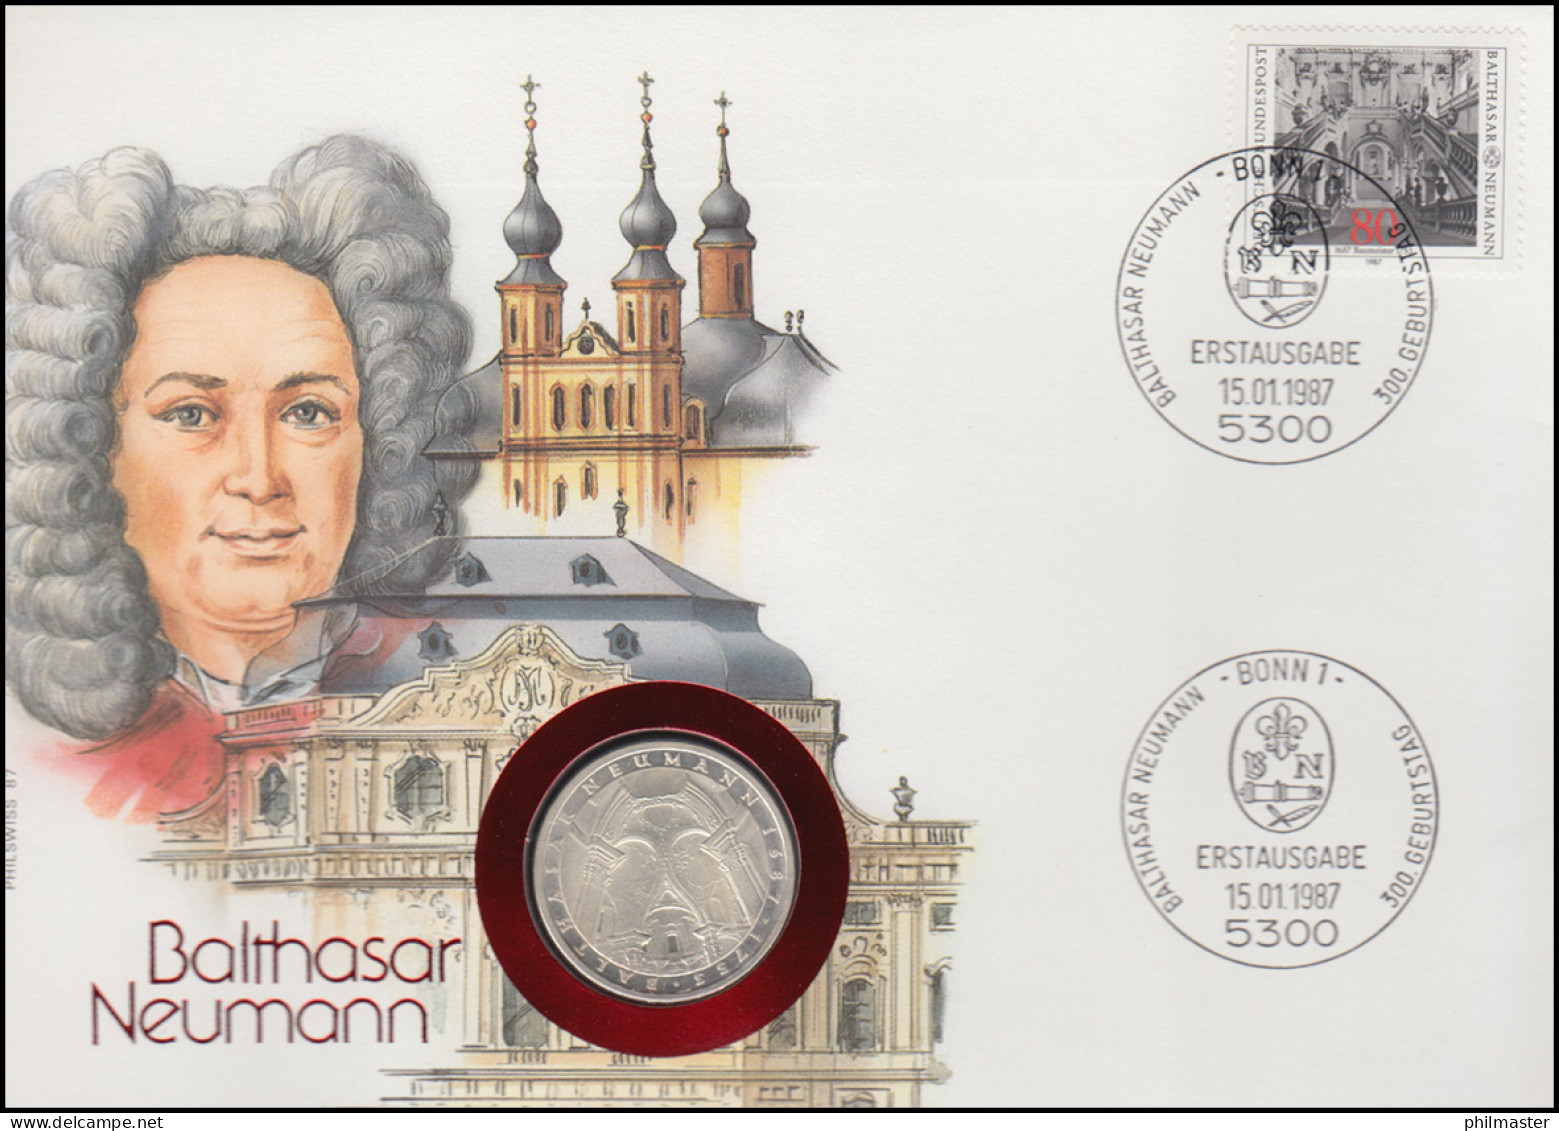 Numisbrief Balthasar Neumann, 5 DM / 80 Pf., ESST Bonn 15.01.1987 - Numismatische Enveloppen